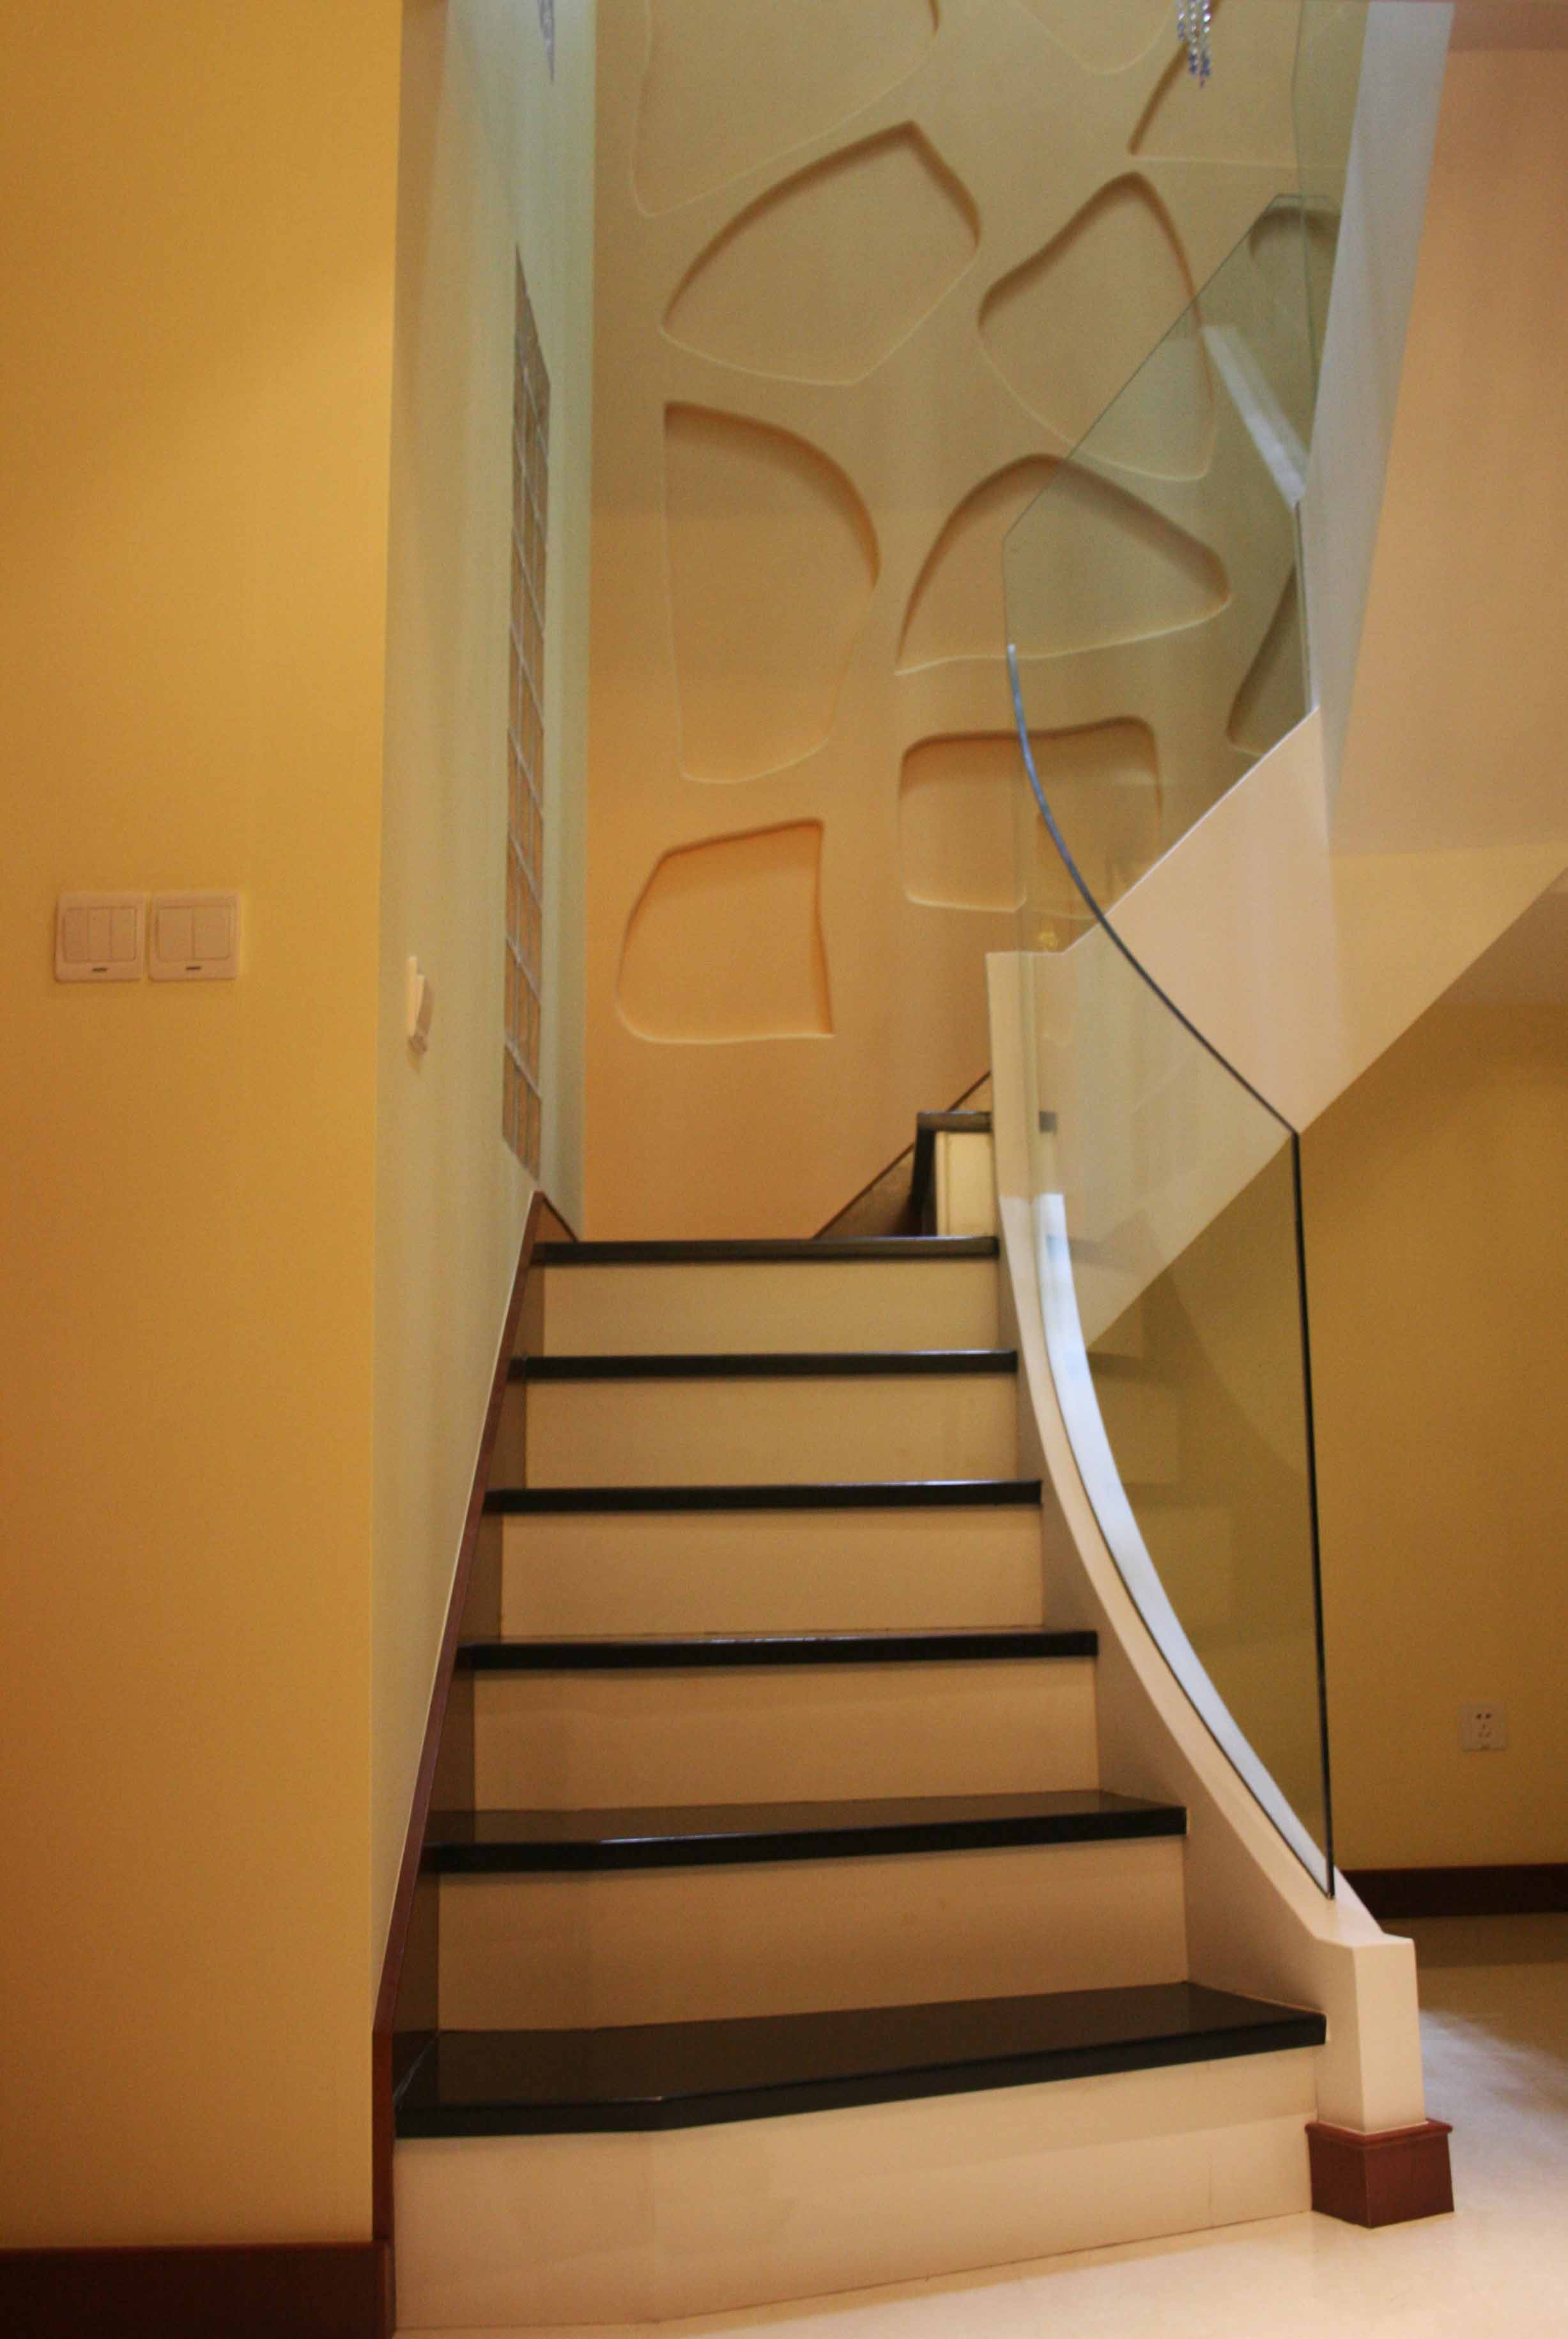 楼梯间,玻璃栏杆和背景自由图案装饰,使空间协调